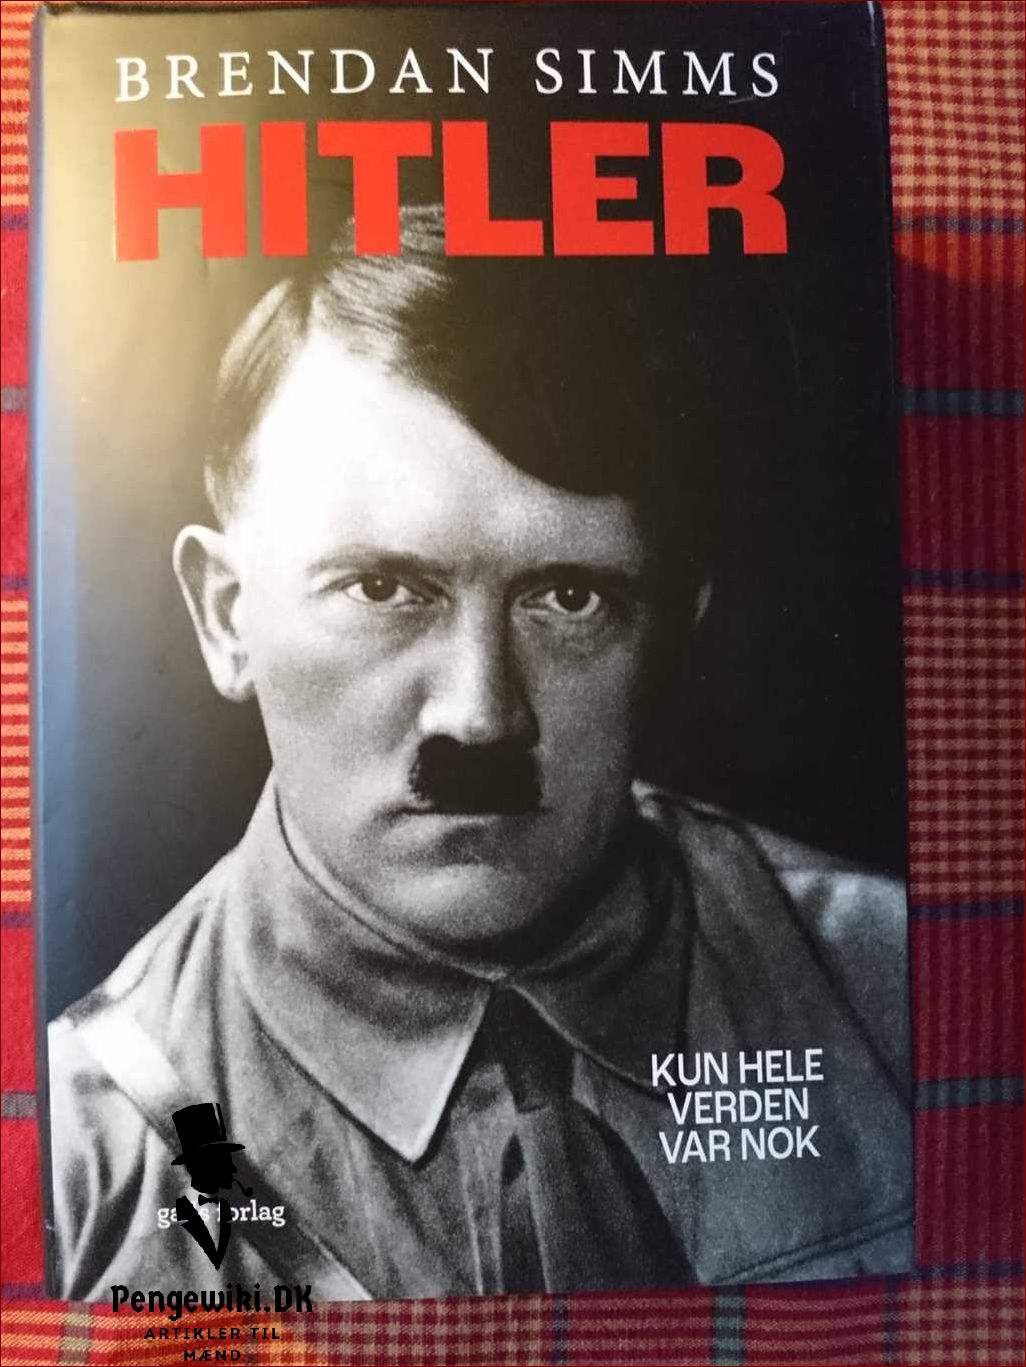 Hitler var en berygtet personlighed i historien